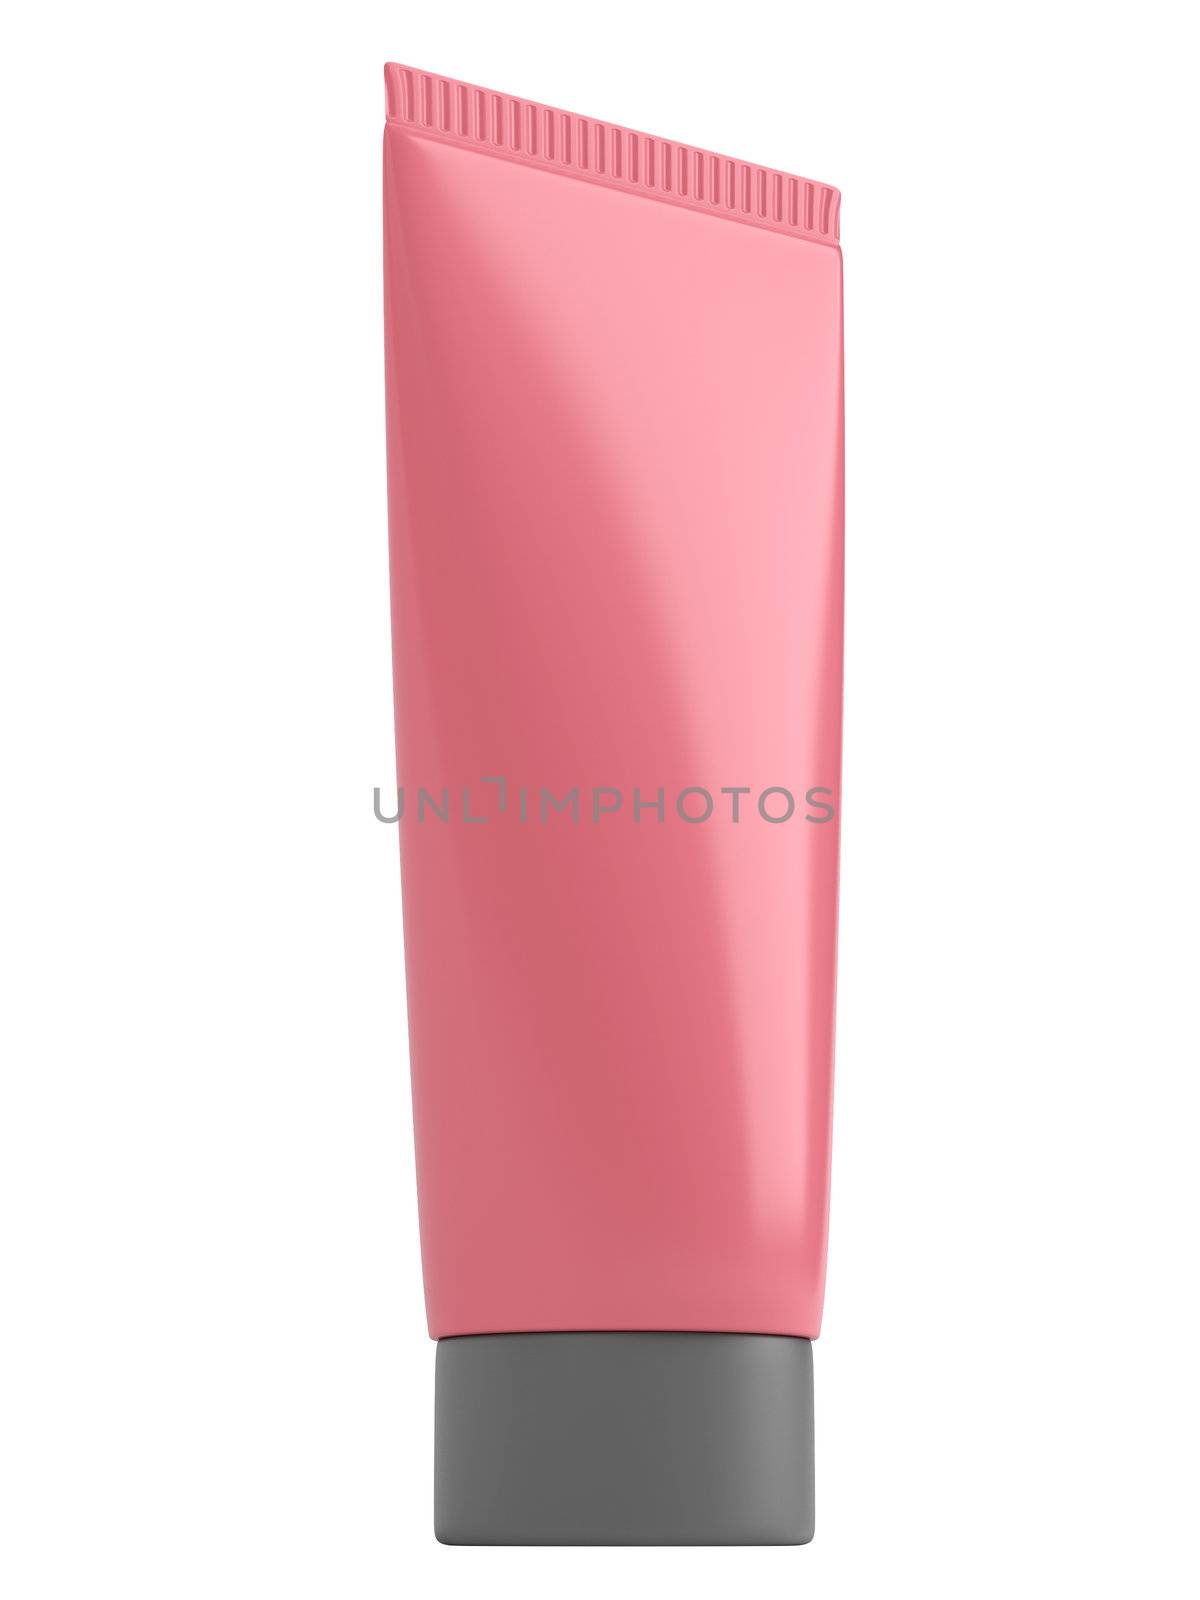 Rose tube shampoo isolated on white background